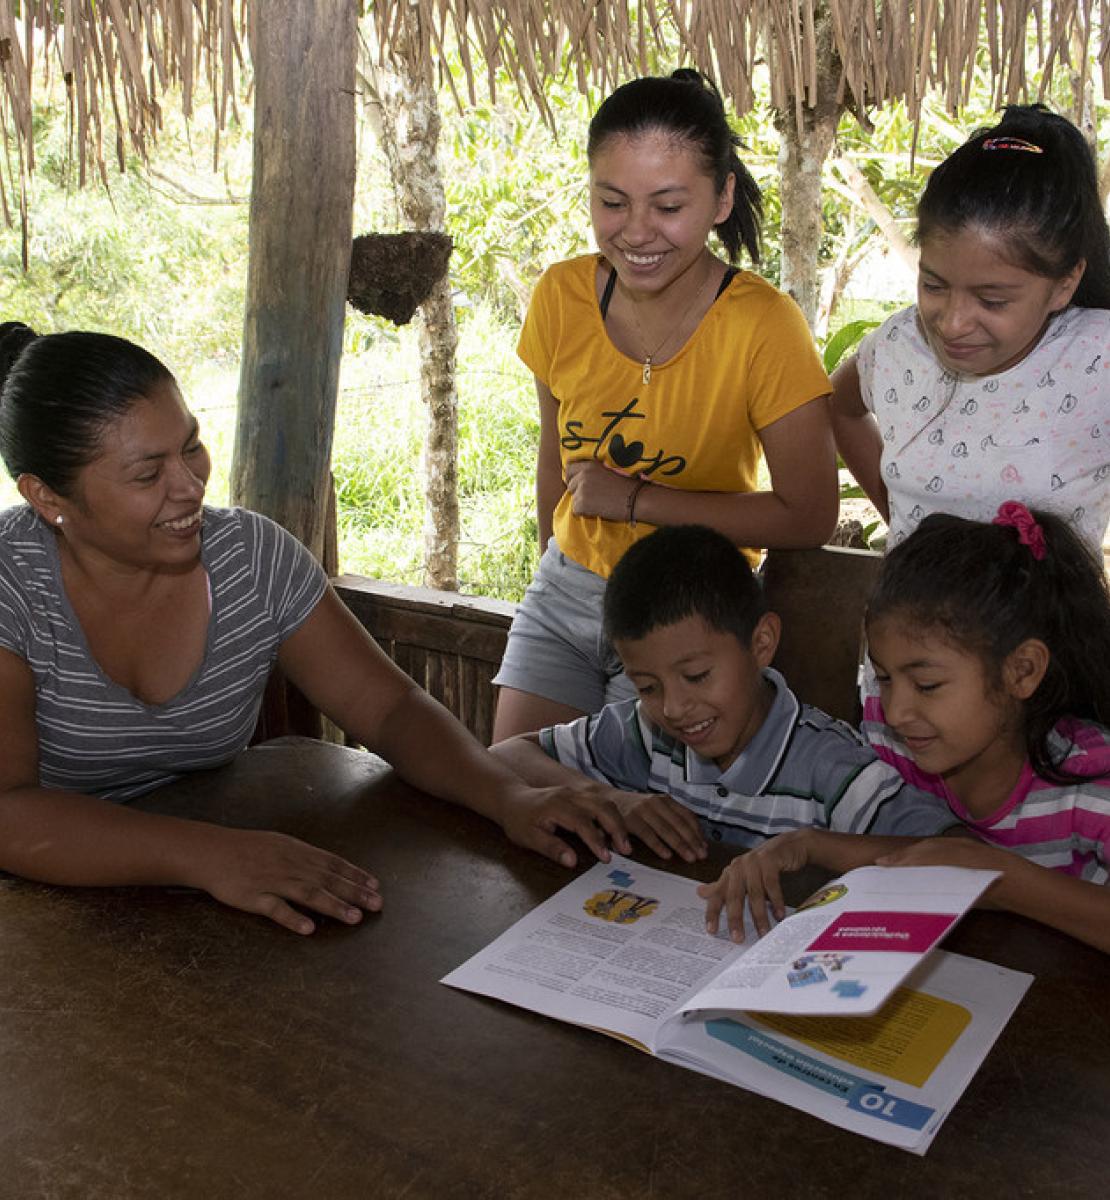 أربعة أطفال وامرأة يقرأون مواد تعليمية خلف طاولة خشبية.